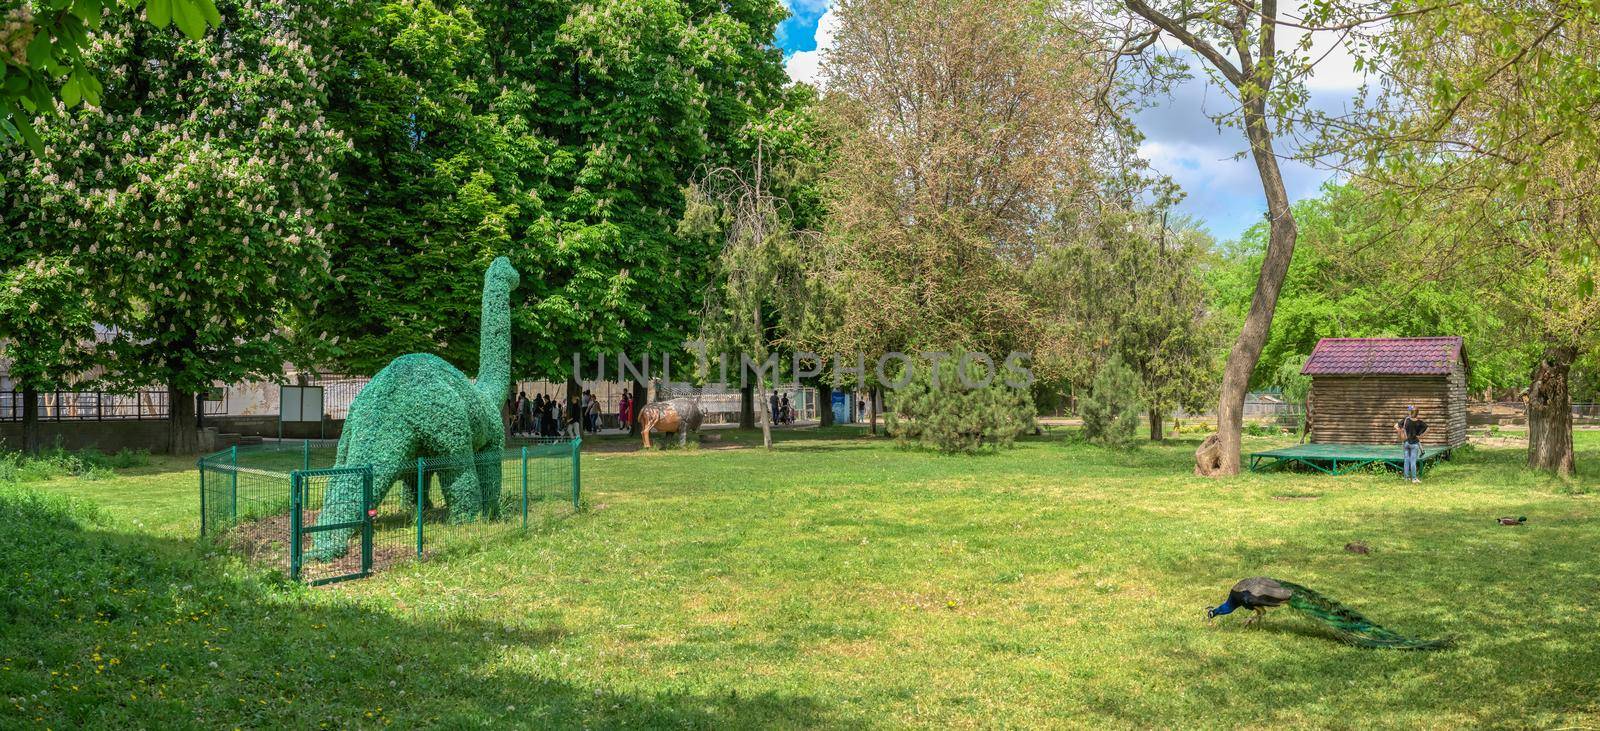 Garden sculptures in the Odessa Zoo, Ukraine by Multipedia